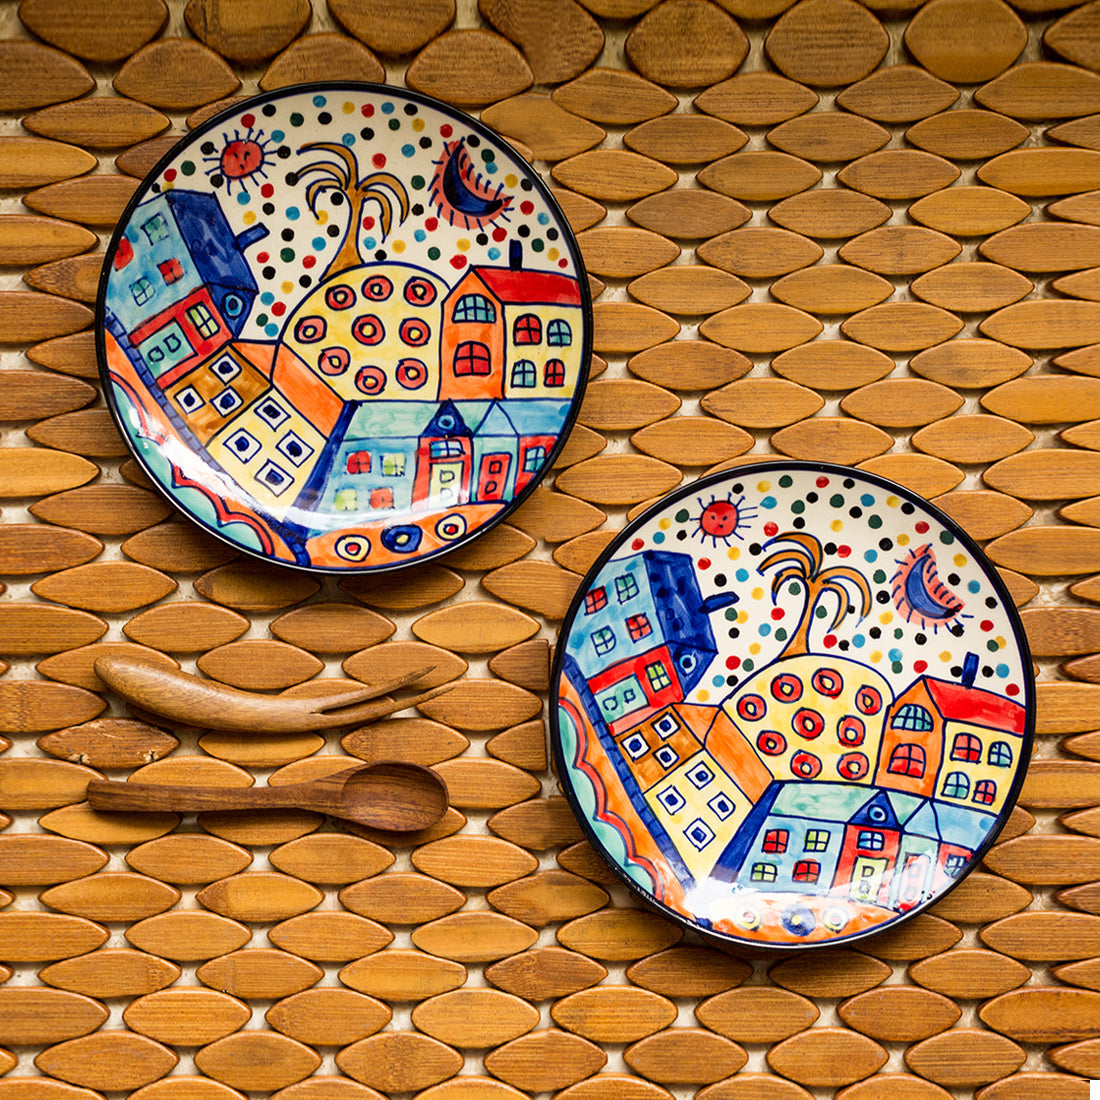 Ceramic Plates Set